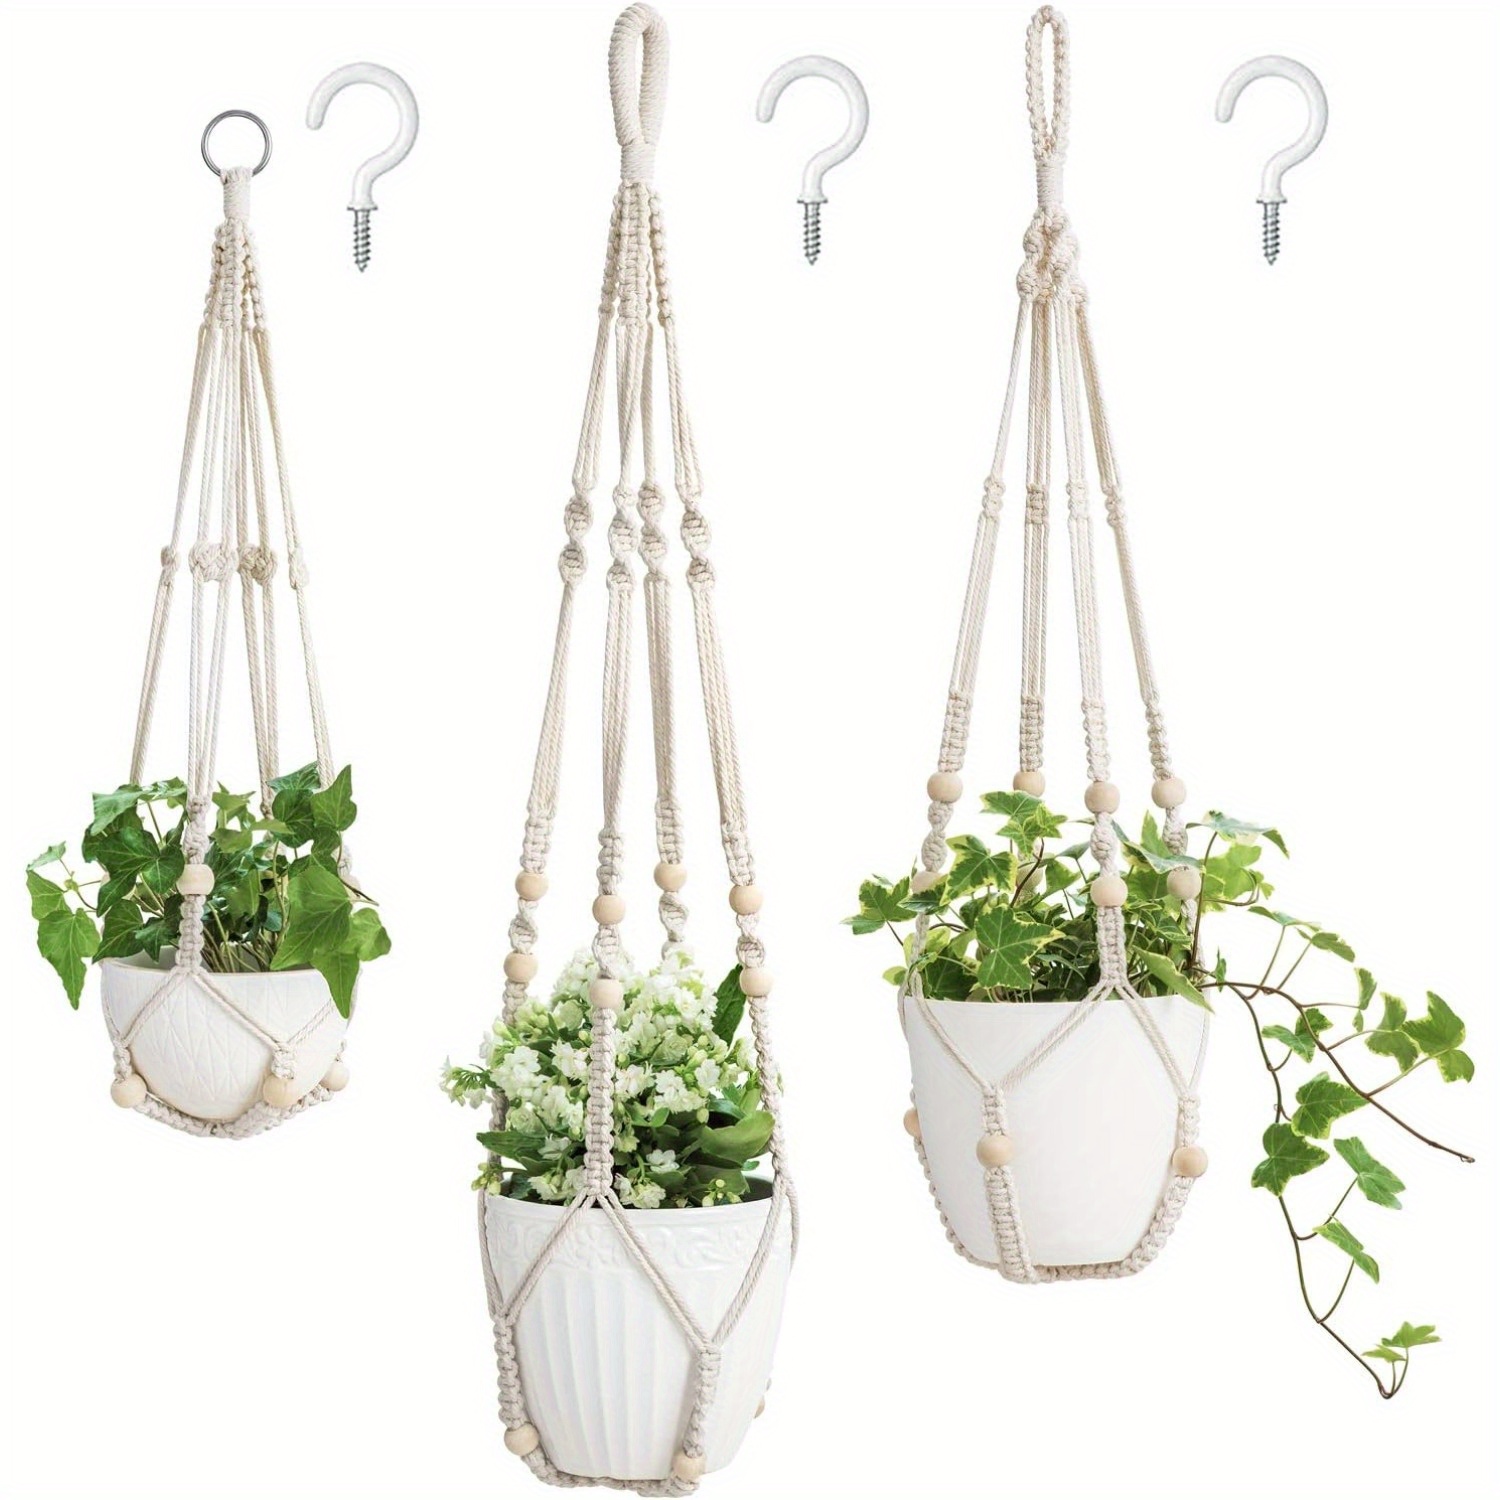 

3 Packs, Macrame Plant Hangers Indoor Different Size Hanging Planter Basket Flower Pot Holder With Beads No Tassels 35"/29"/23", Flower Rack, Flower Pot Hanger, Hanging Flower Pots